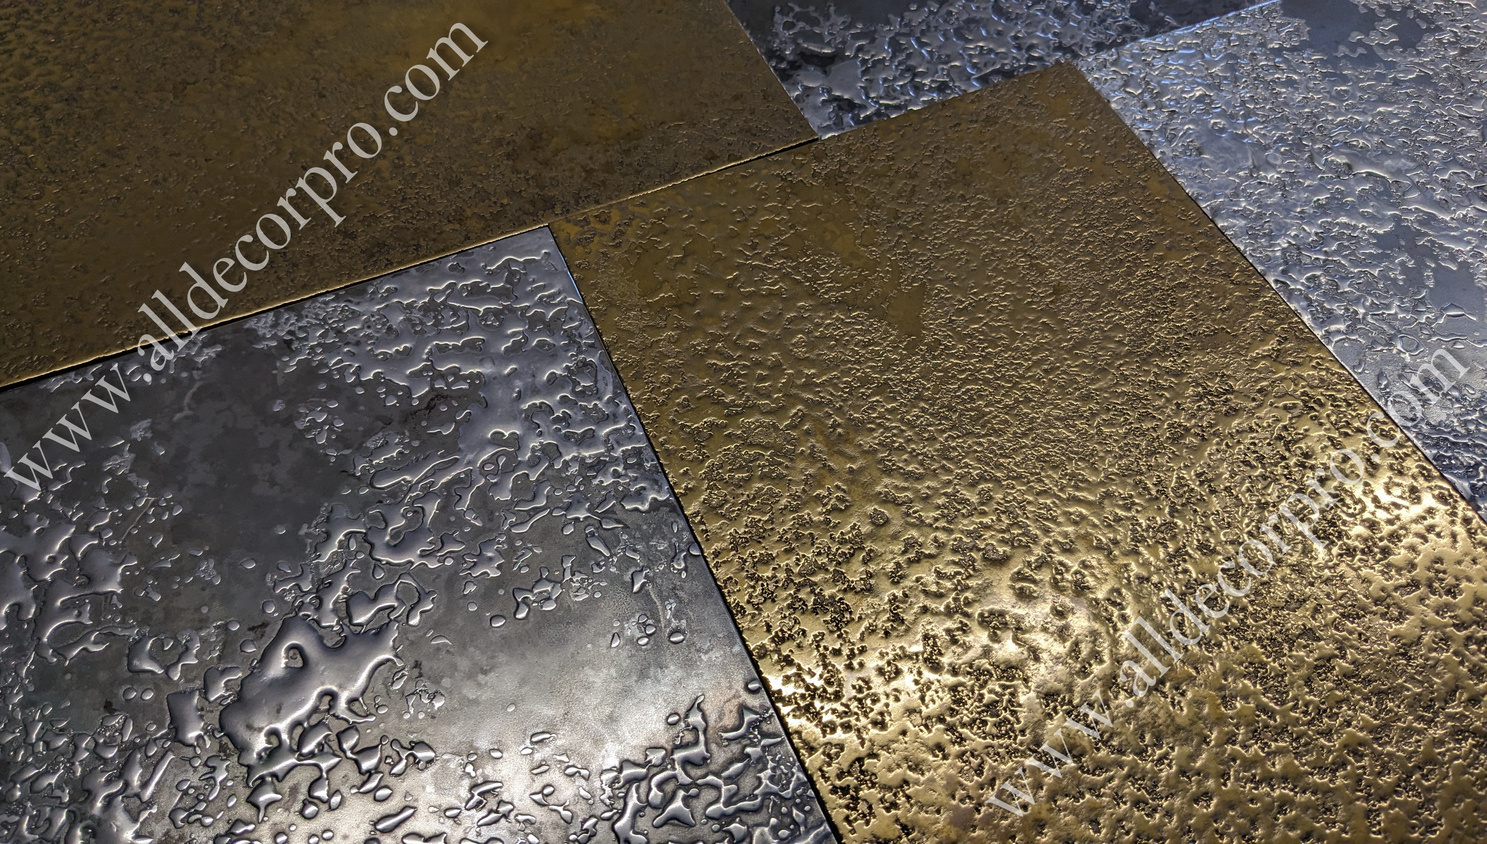 Образцы декоративного покрытия жидкий металл Metallhaut с фактурным эффектом